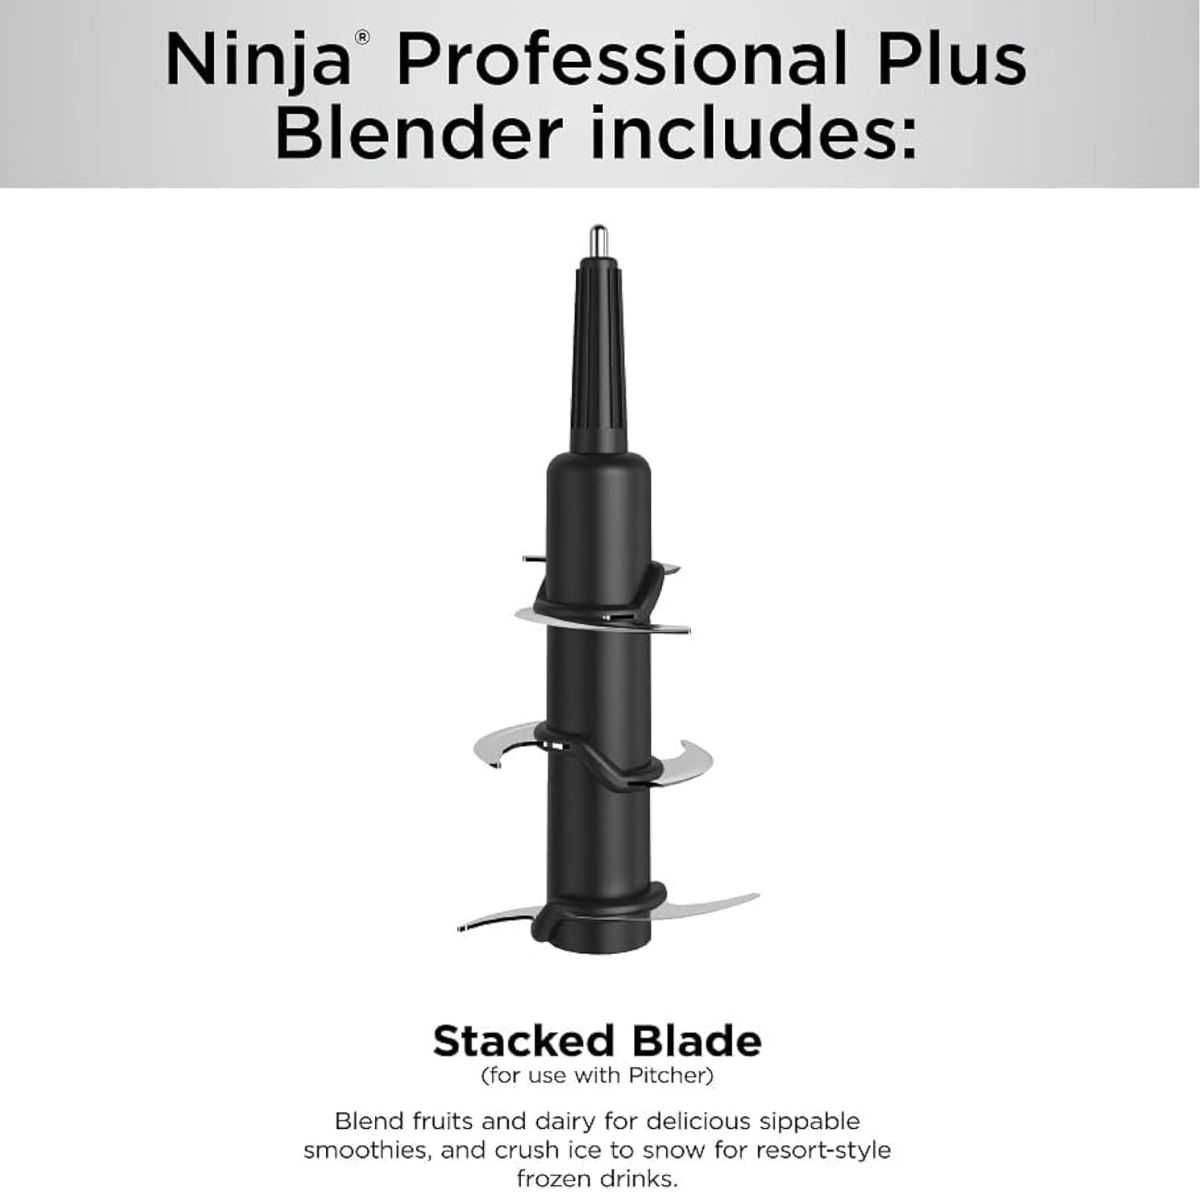 Ninja - Licuadora Profesional Plus Con Auto-iq - Bn701 Color Negro